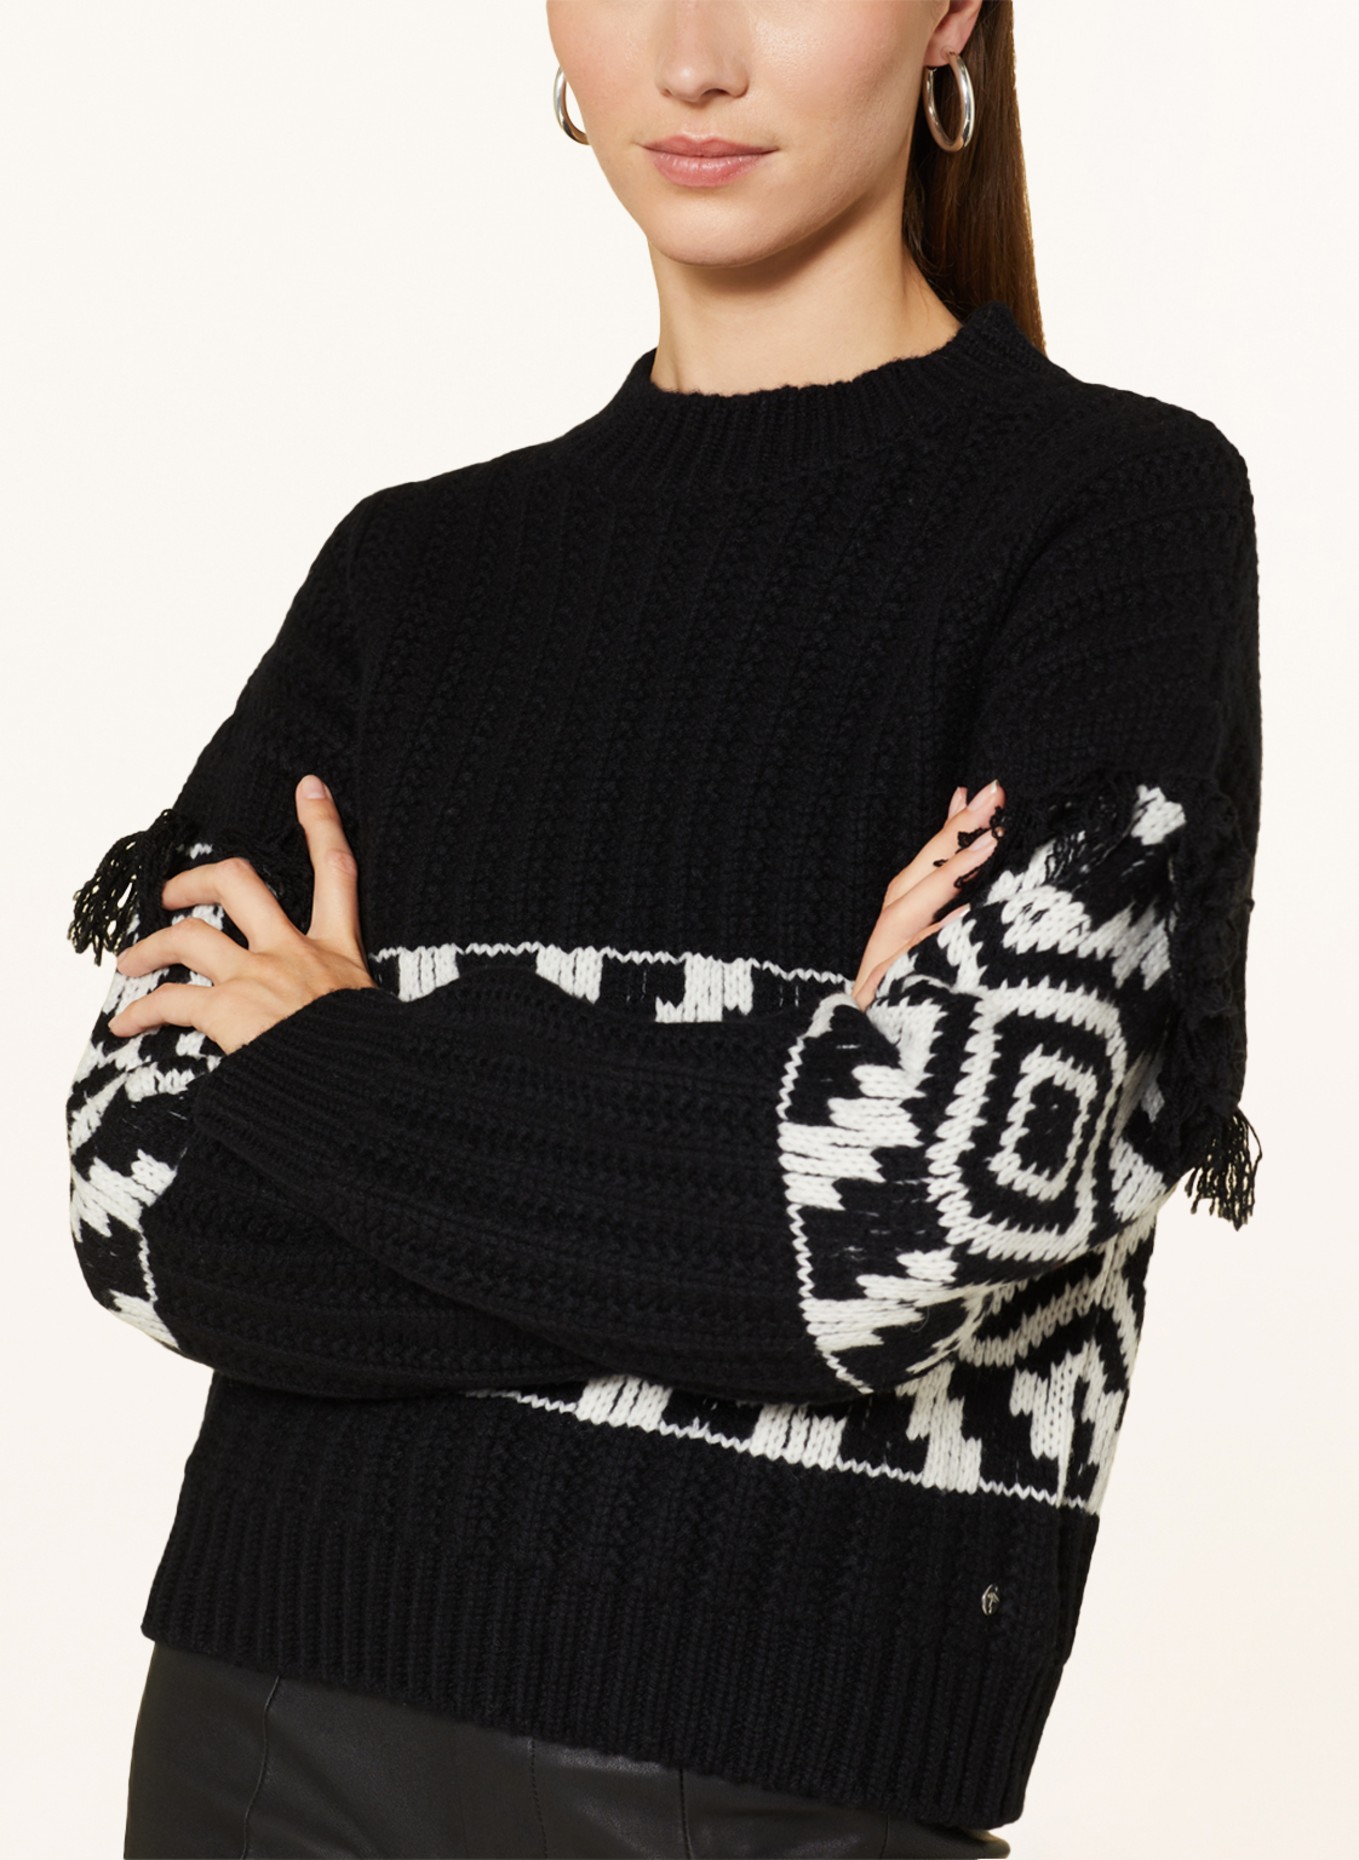 FYNCH-HATTON Sweater in white black